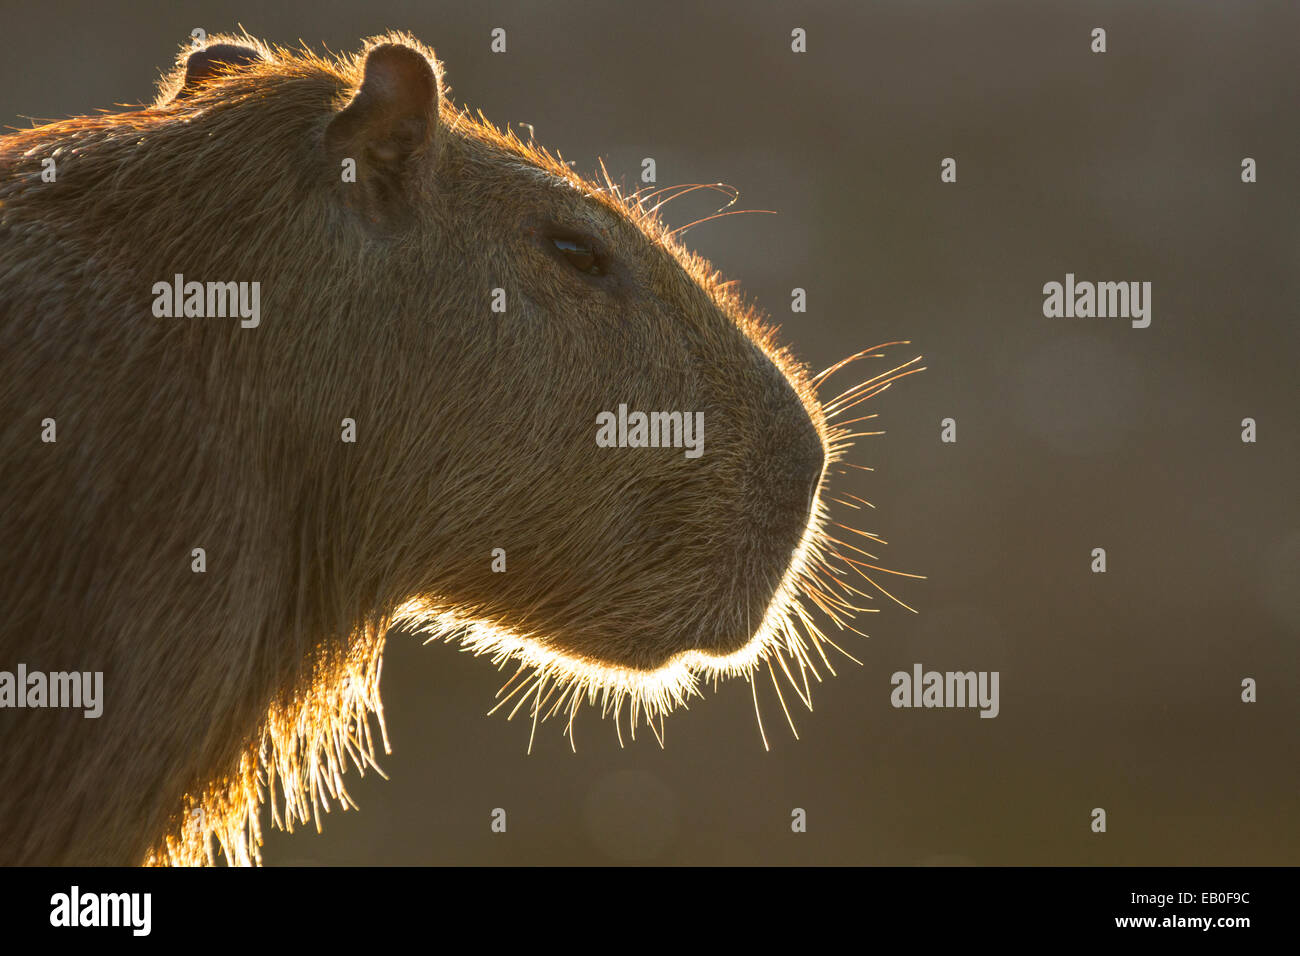 Backlit capybara (Hydrochoerus hydrochaeris) portrait, Los Ilanos del Orinoco, Venezuela. Stock Photo